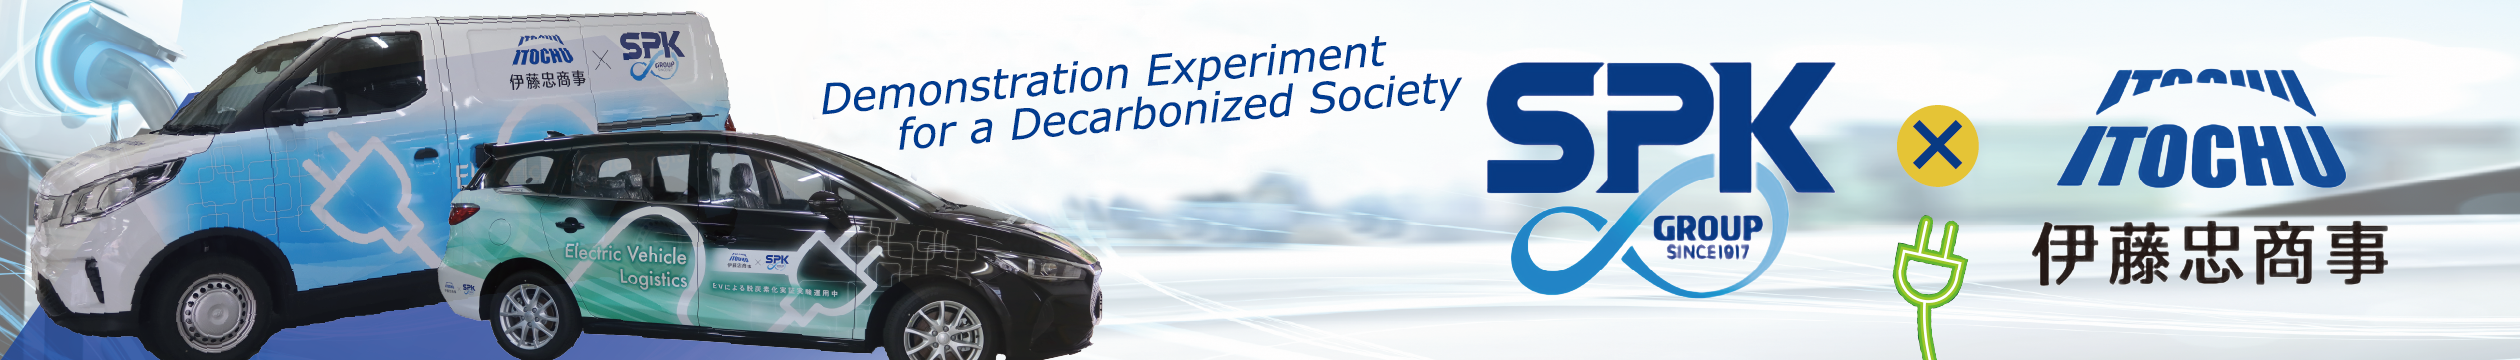 電動自動車の導入を始めとしたオフィス脱炭素化の実証実験実施と伊藤忠商事株式会社との協業について